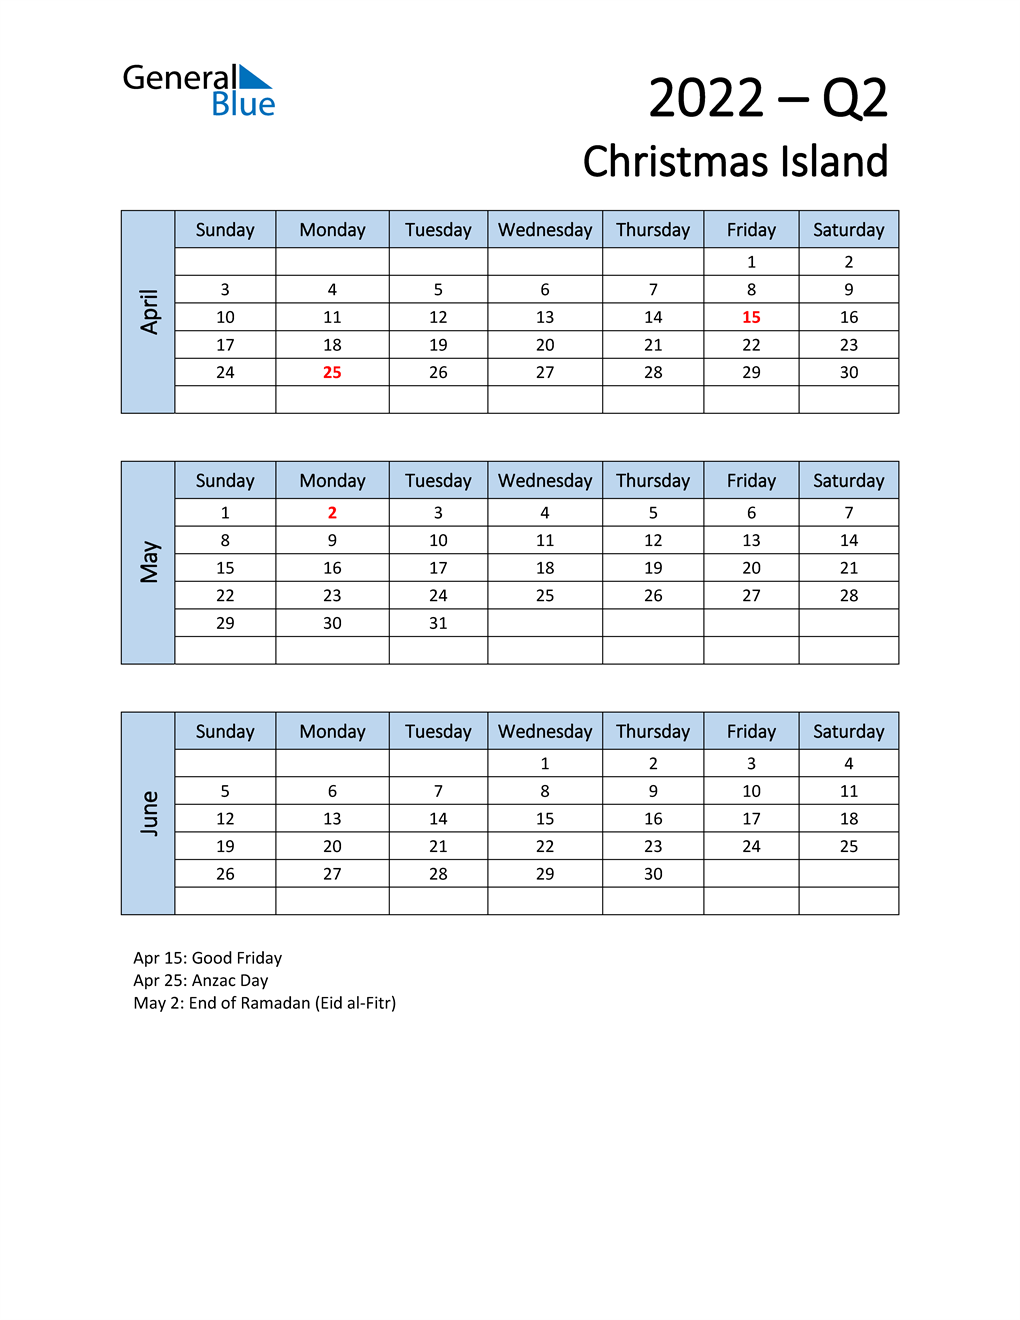  Free Q2 2022 Calendar for Christmas Island